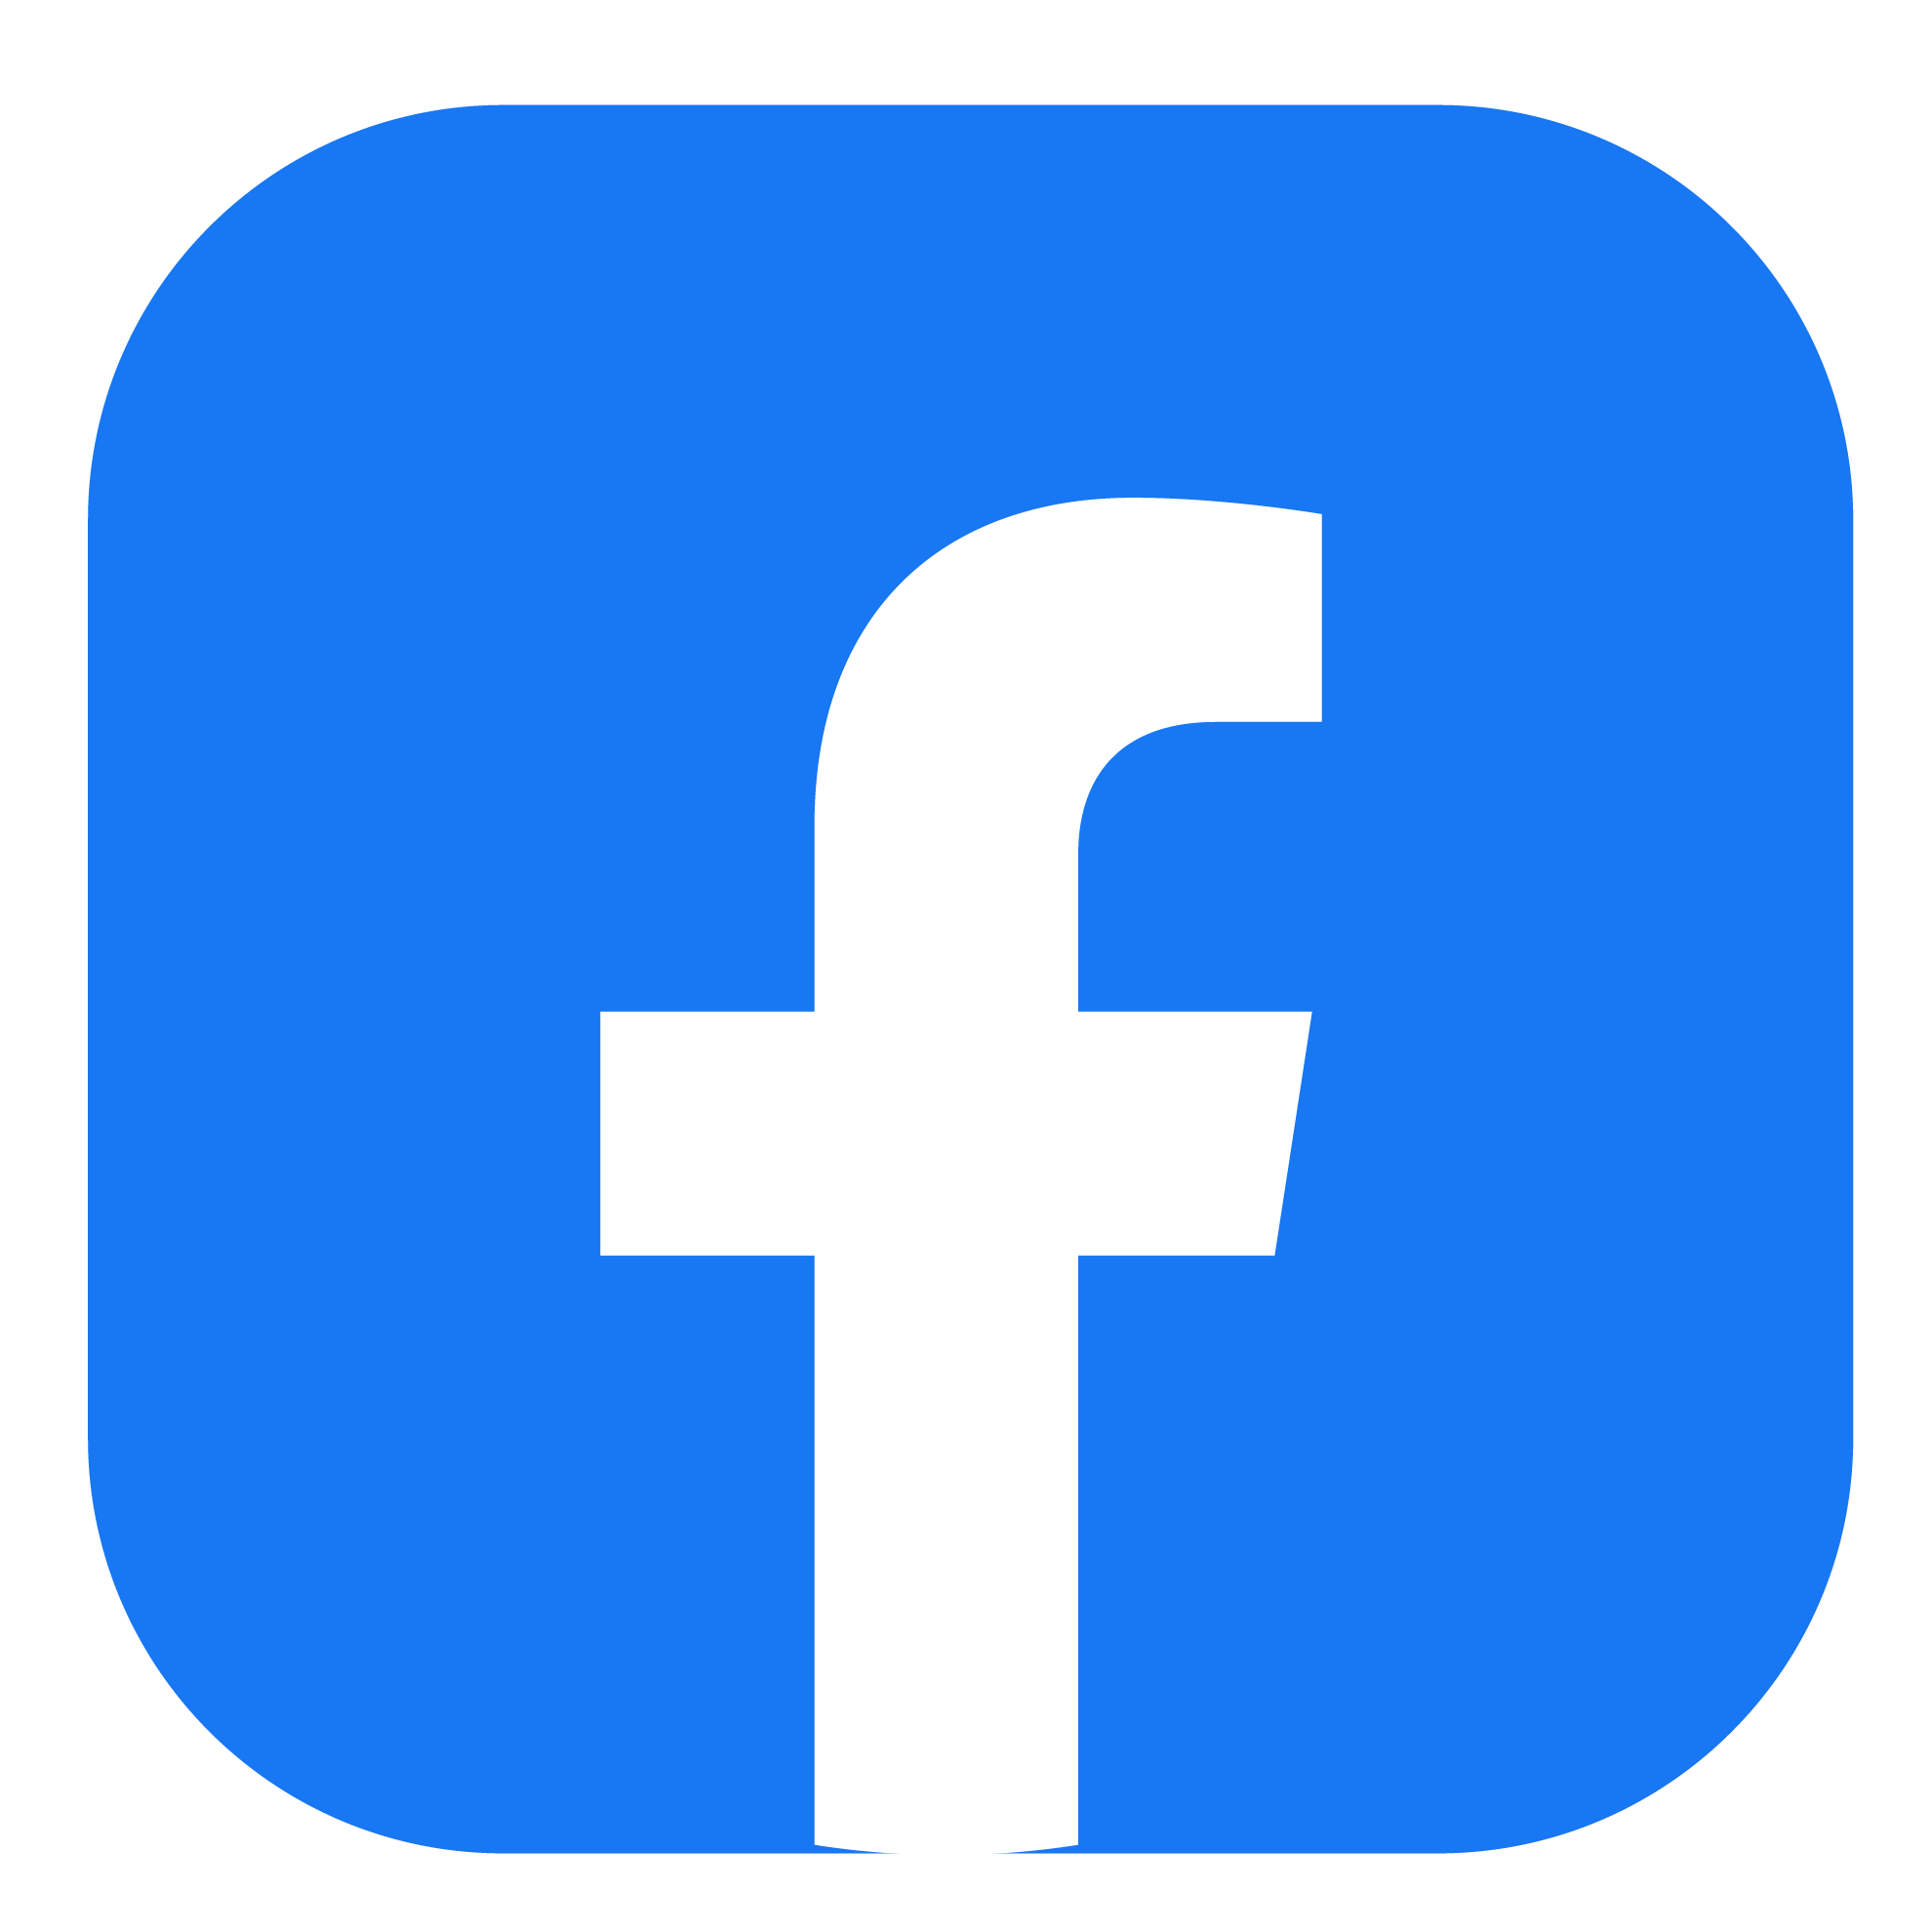 Logotipo Facebook con tu recarga telefónica Movistar prepago ilimitado